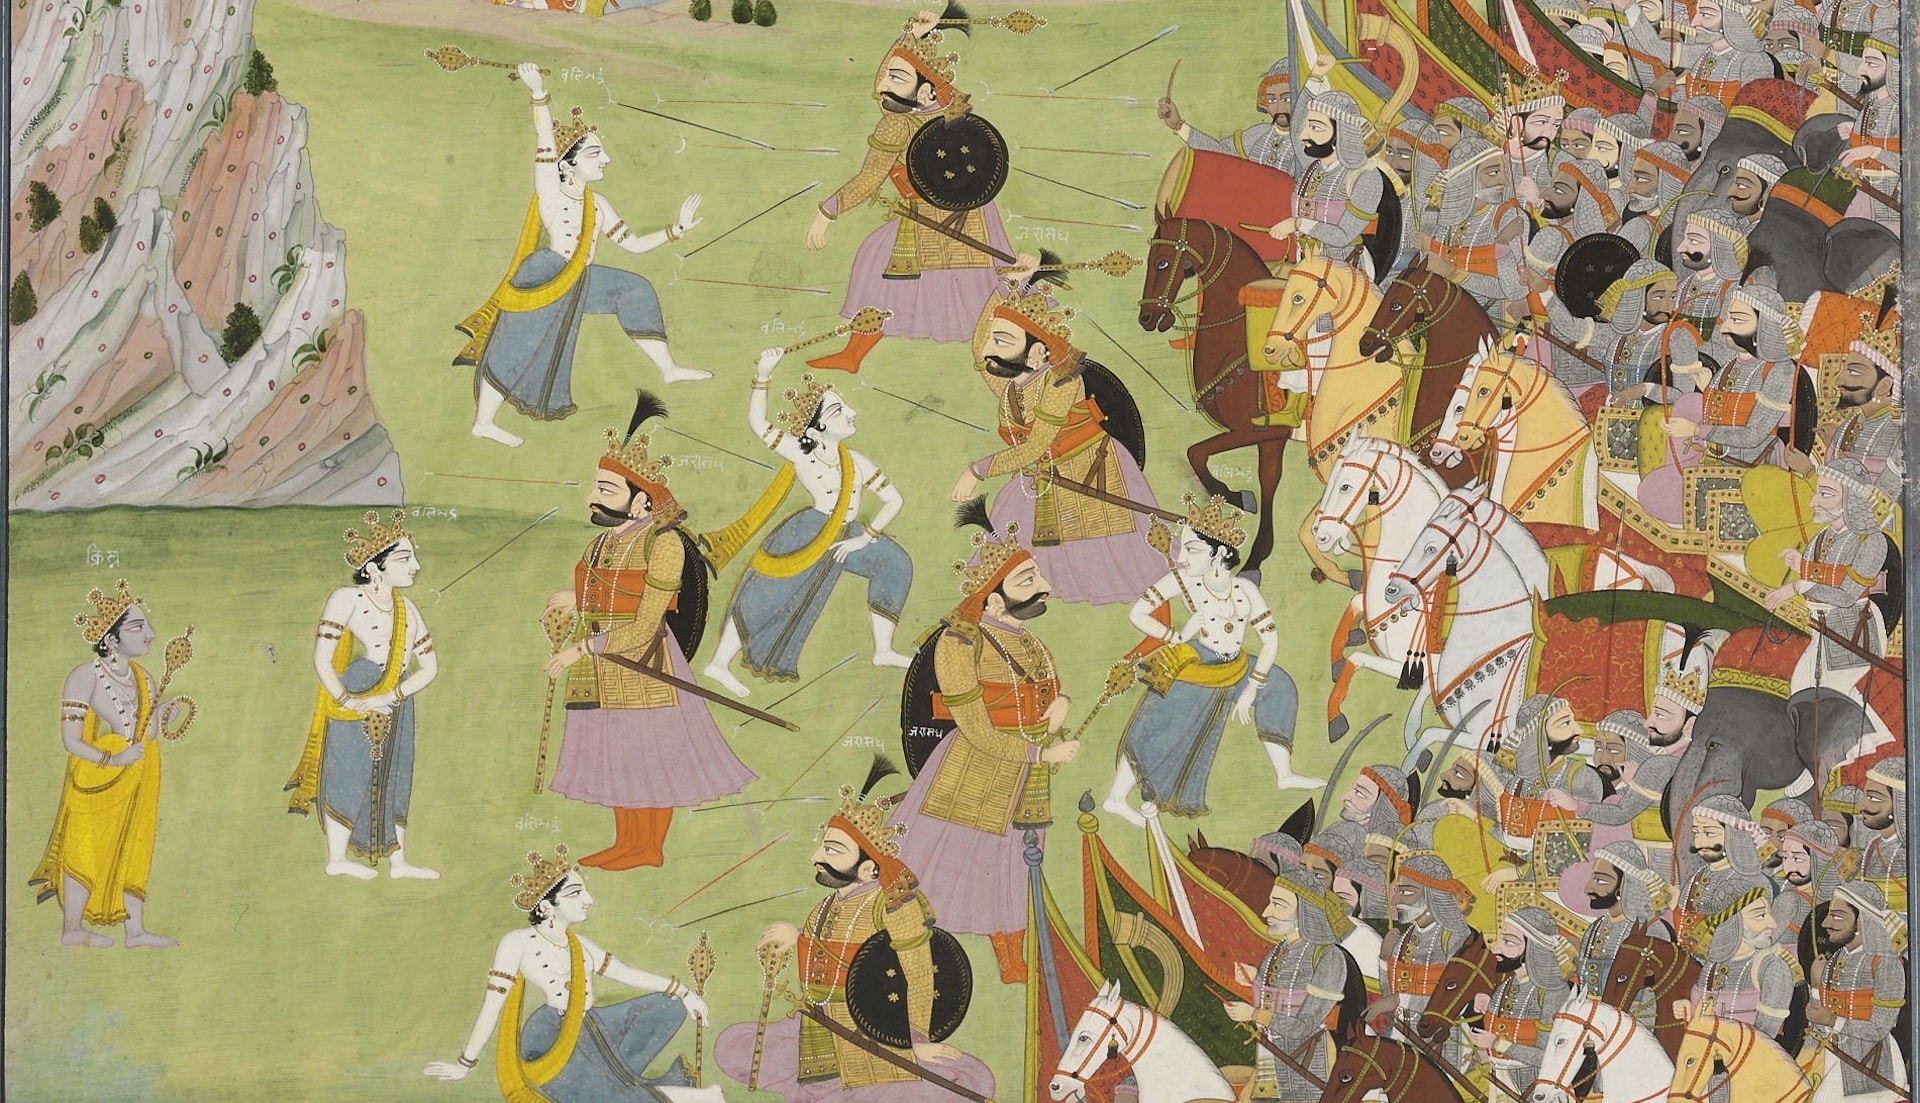 Broadway-style dance musical to depict Kurukshetra war of Mahabharata